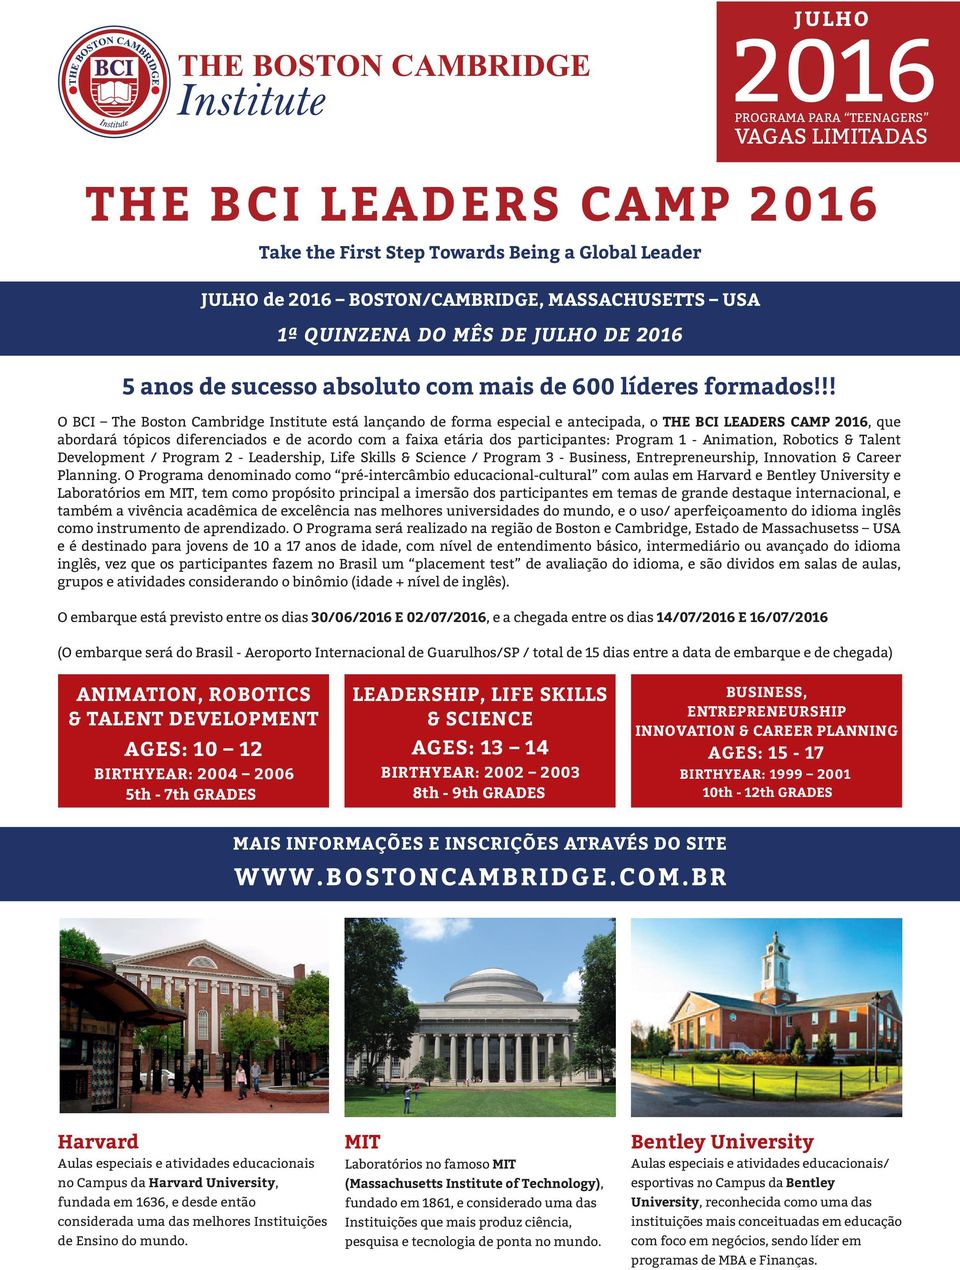 !! O BCI The Boston Cambridge Institute está lançando de forma especial e antecipada, o THE BCI LEADERS CAMP 2016, que abordará tópicos diferenciados e de acordo com a faixa etária dos participantes: